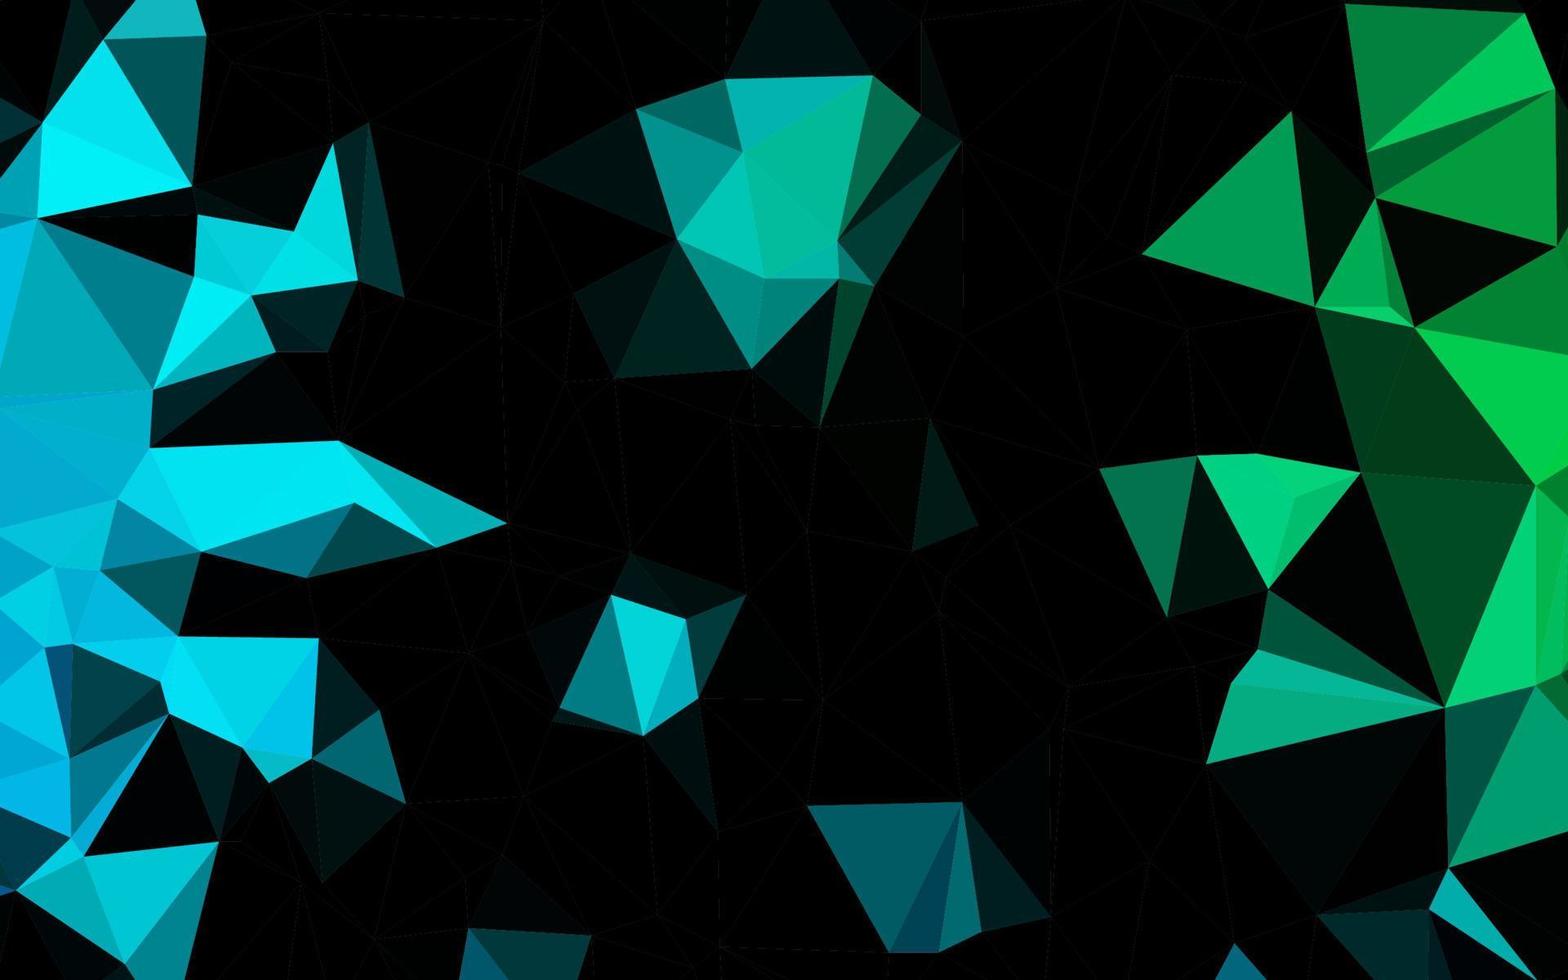 struttura del mosaico del triangolo di vettore blu scuro, verde.